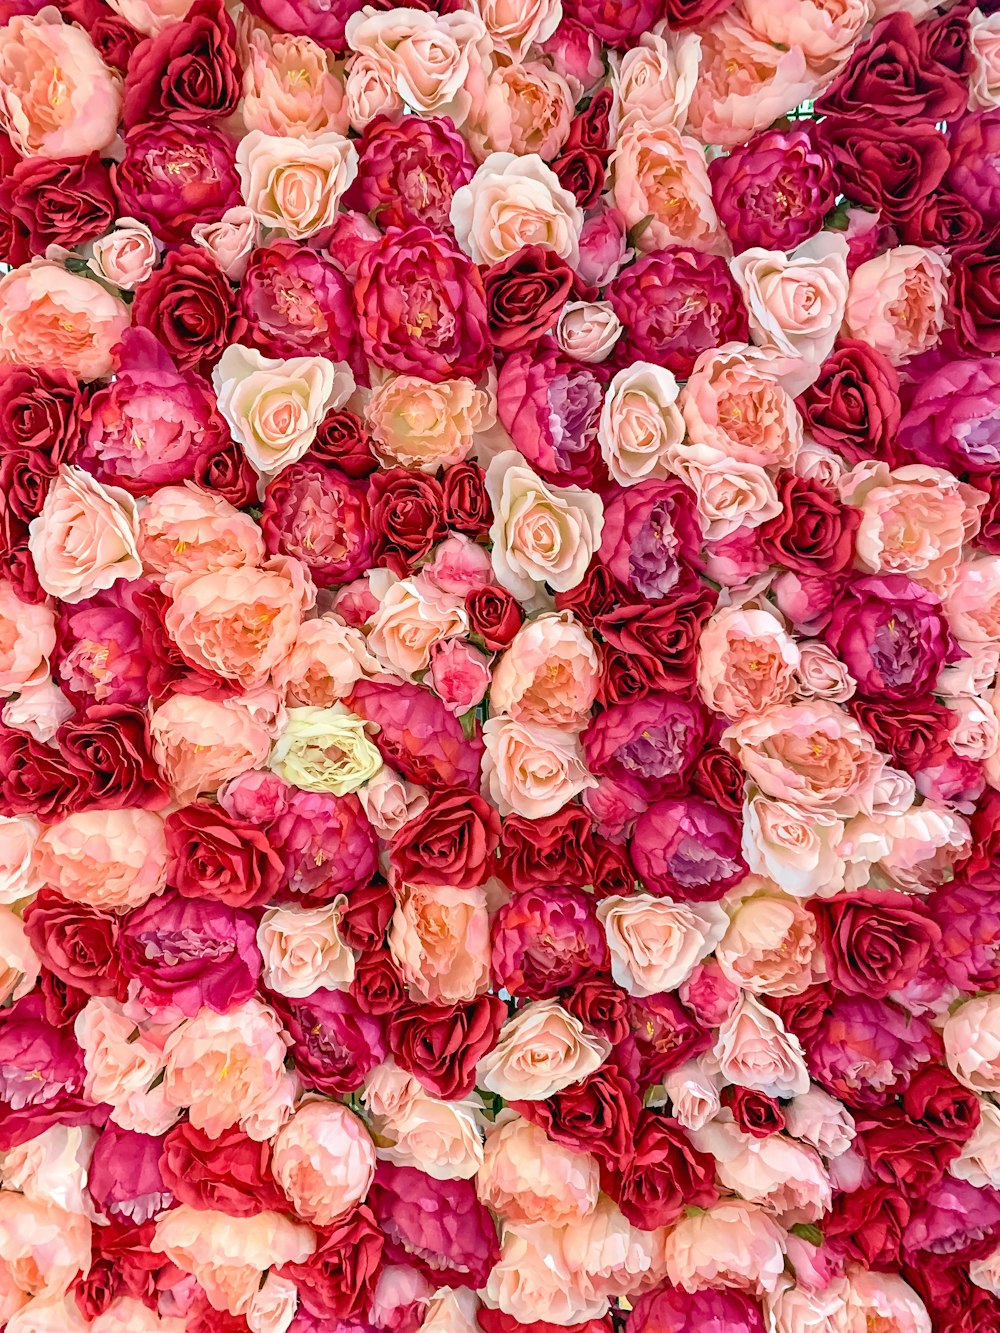 de 550 imágenes de pared de flores | Descargar imágenes en Unsplash